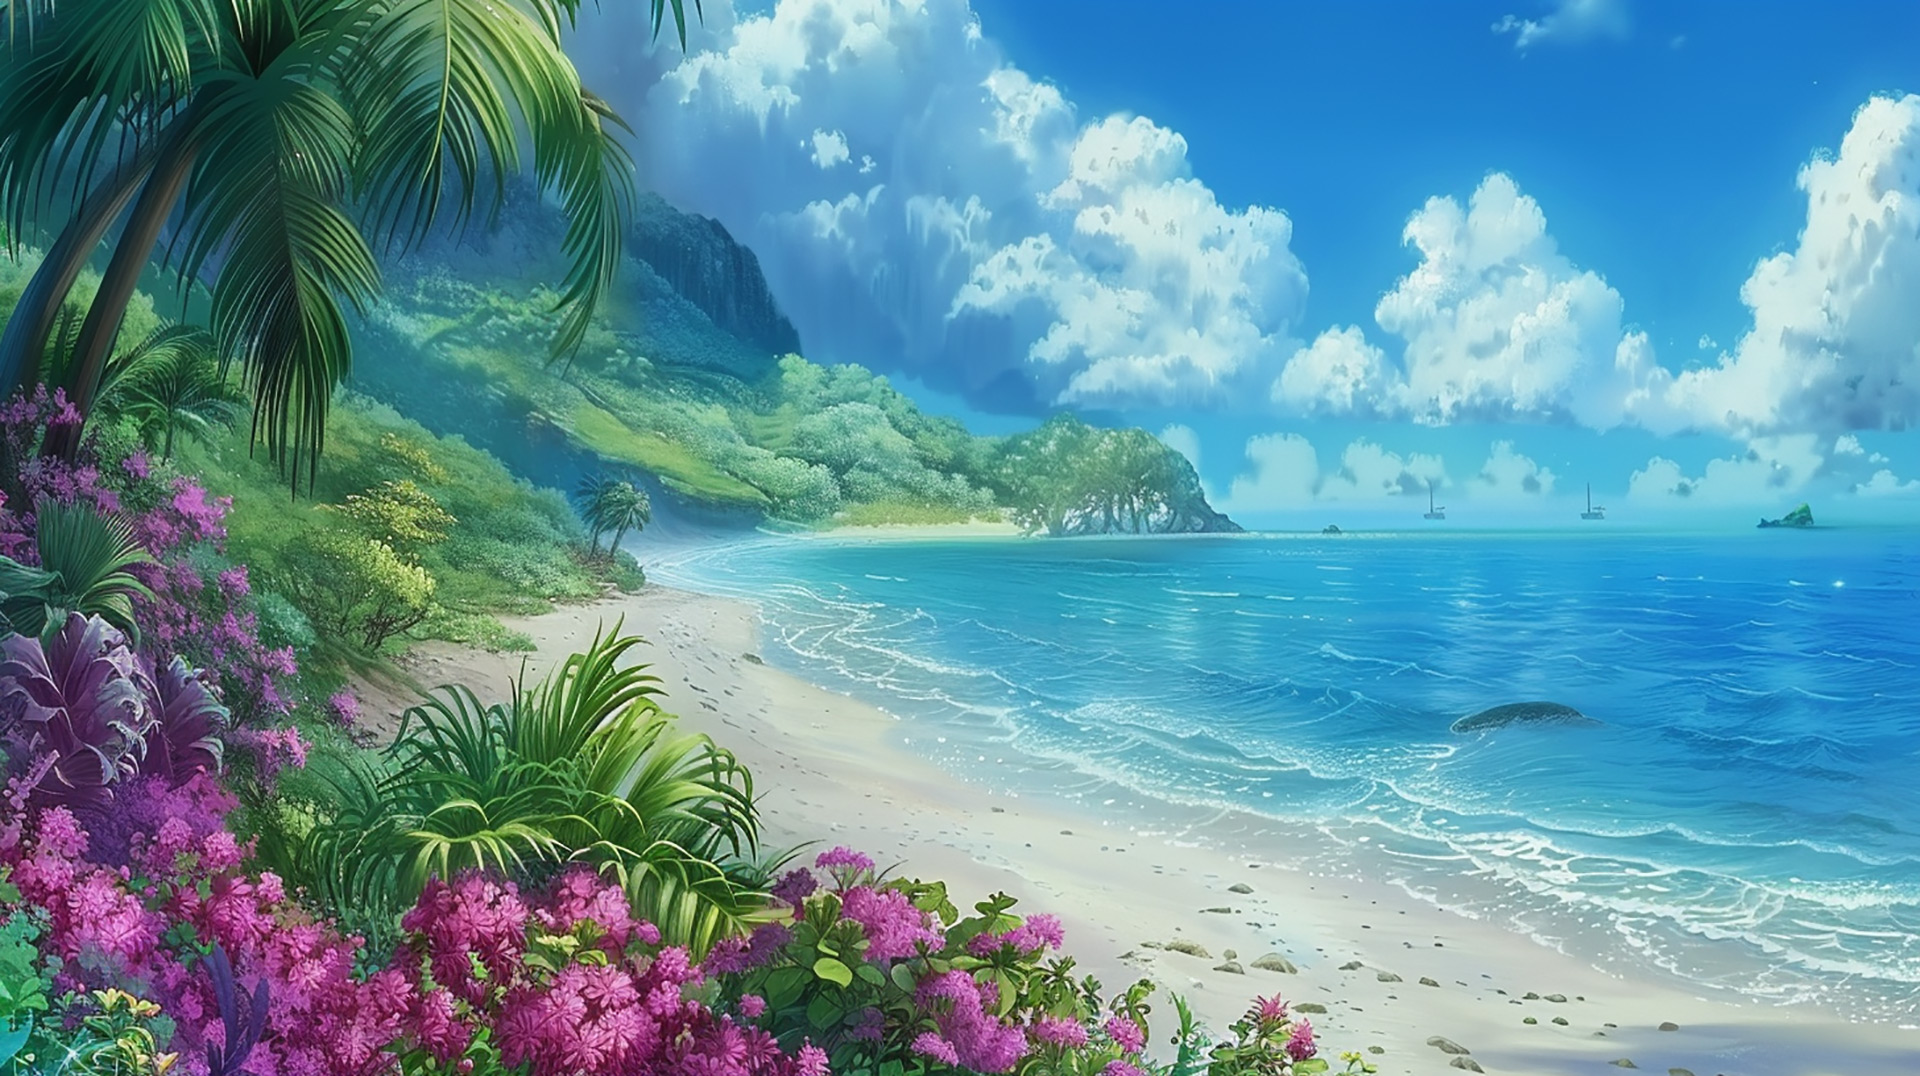 Sun-Kissed Cuteness: Cute Beachy Serenity